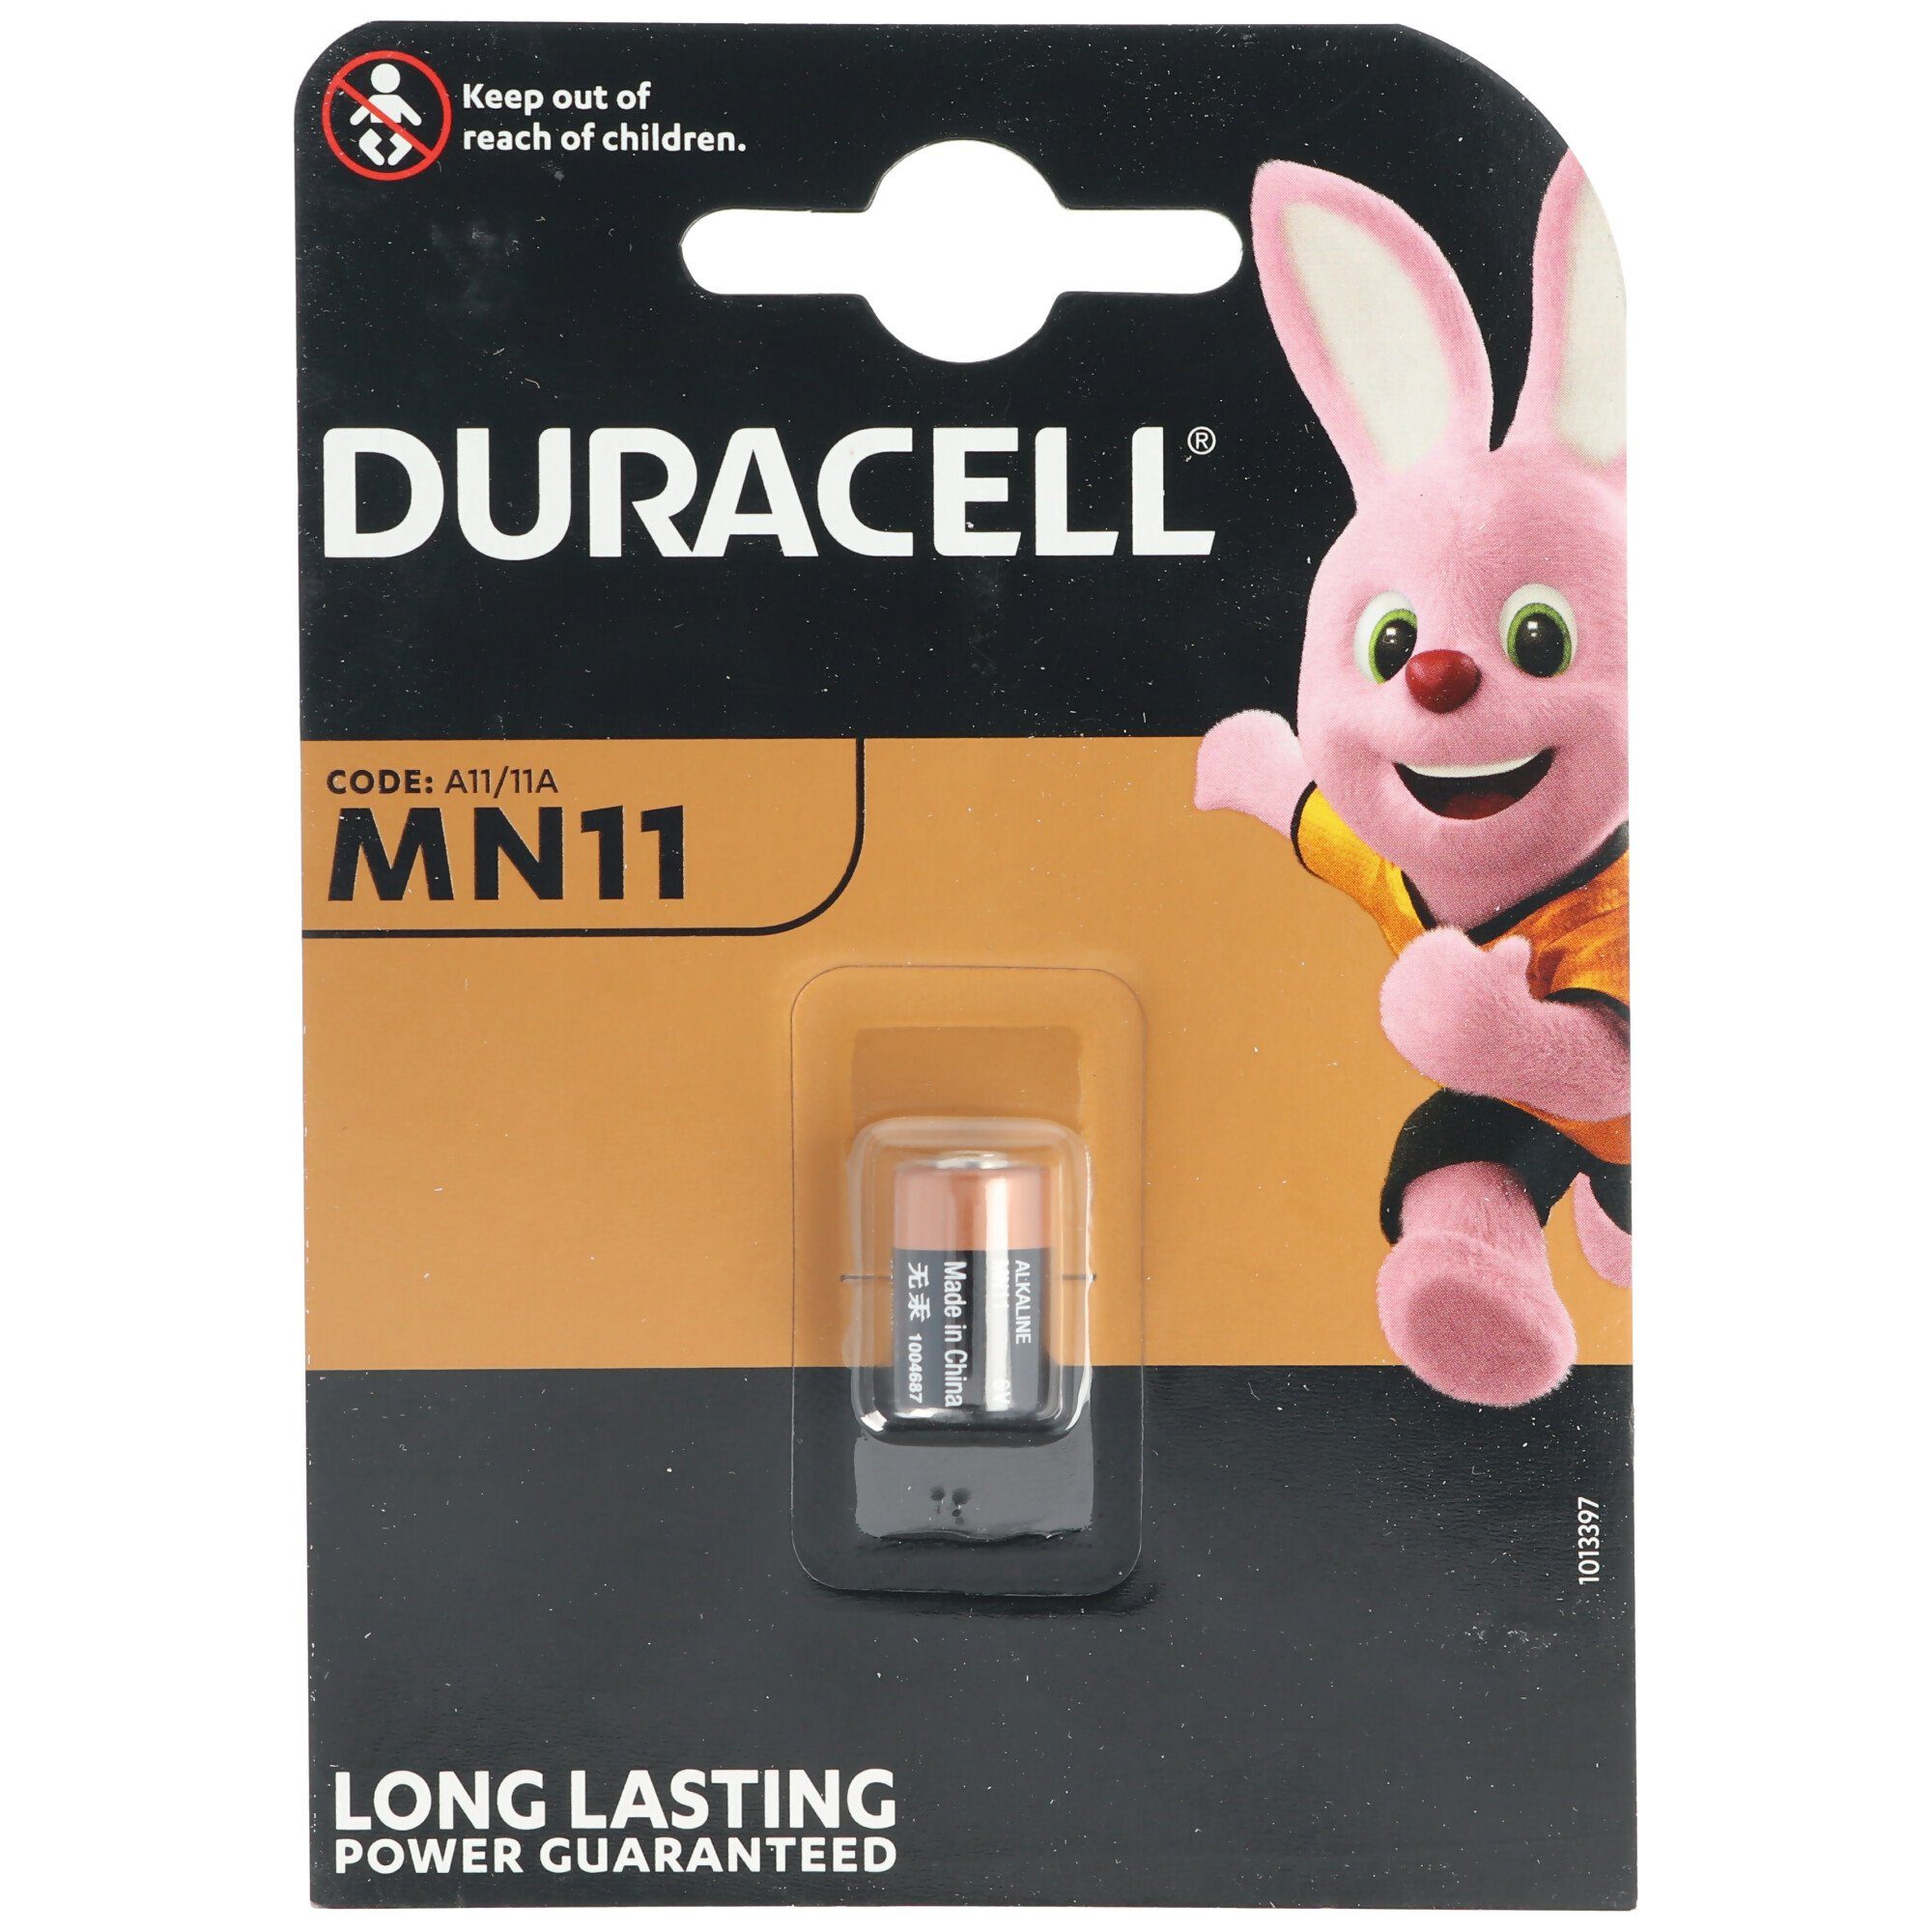 Duracell Duracell MN11 Alkaline Batterie 6 Volt, Abmessungen 16 x 10 mm Batterie, (6,0 V)